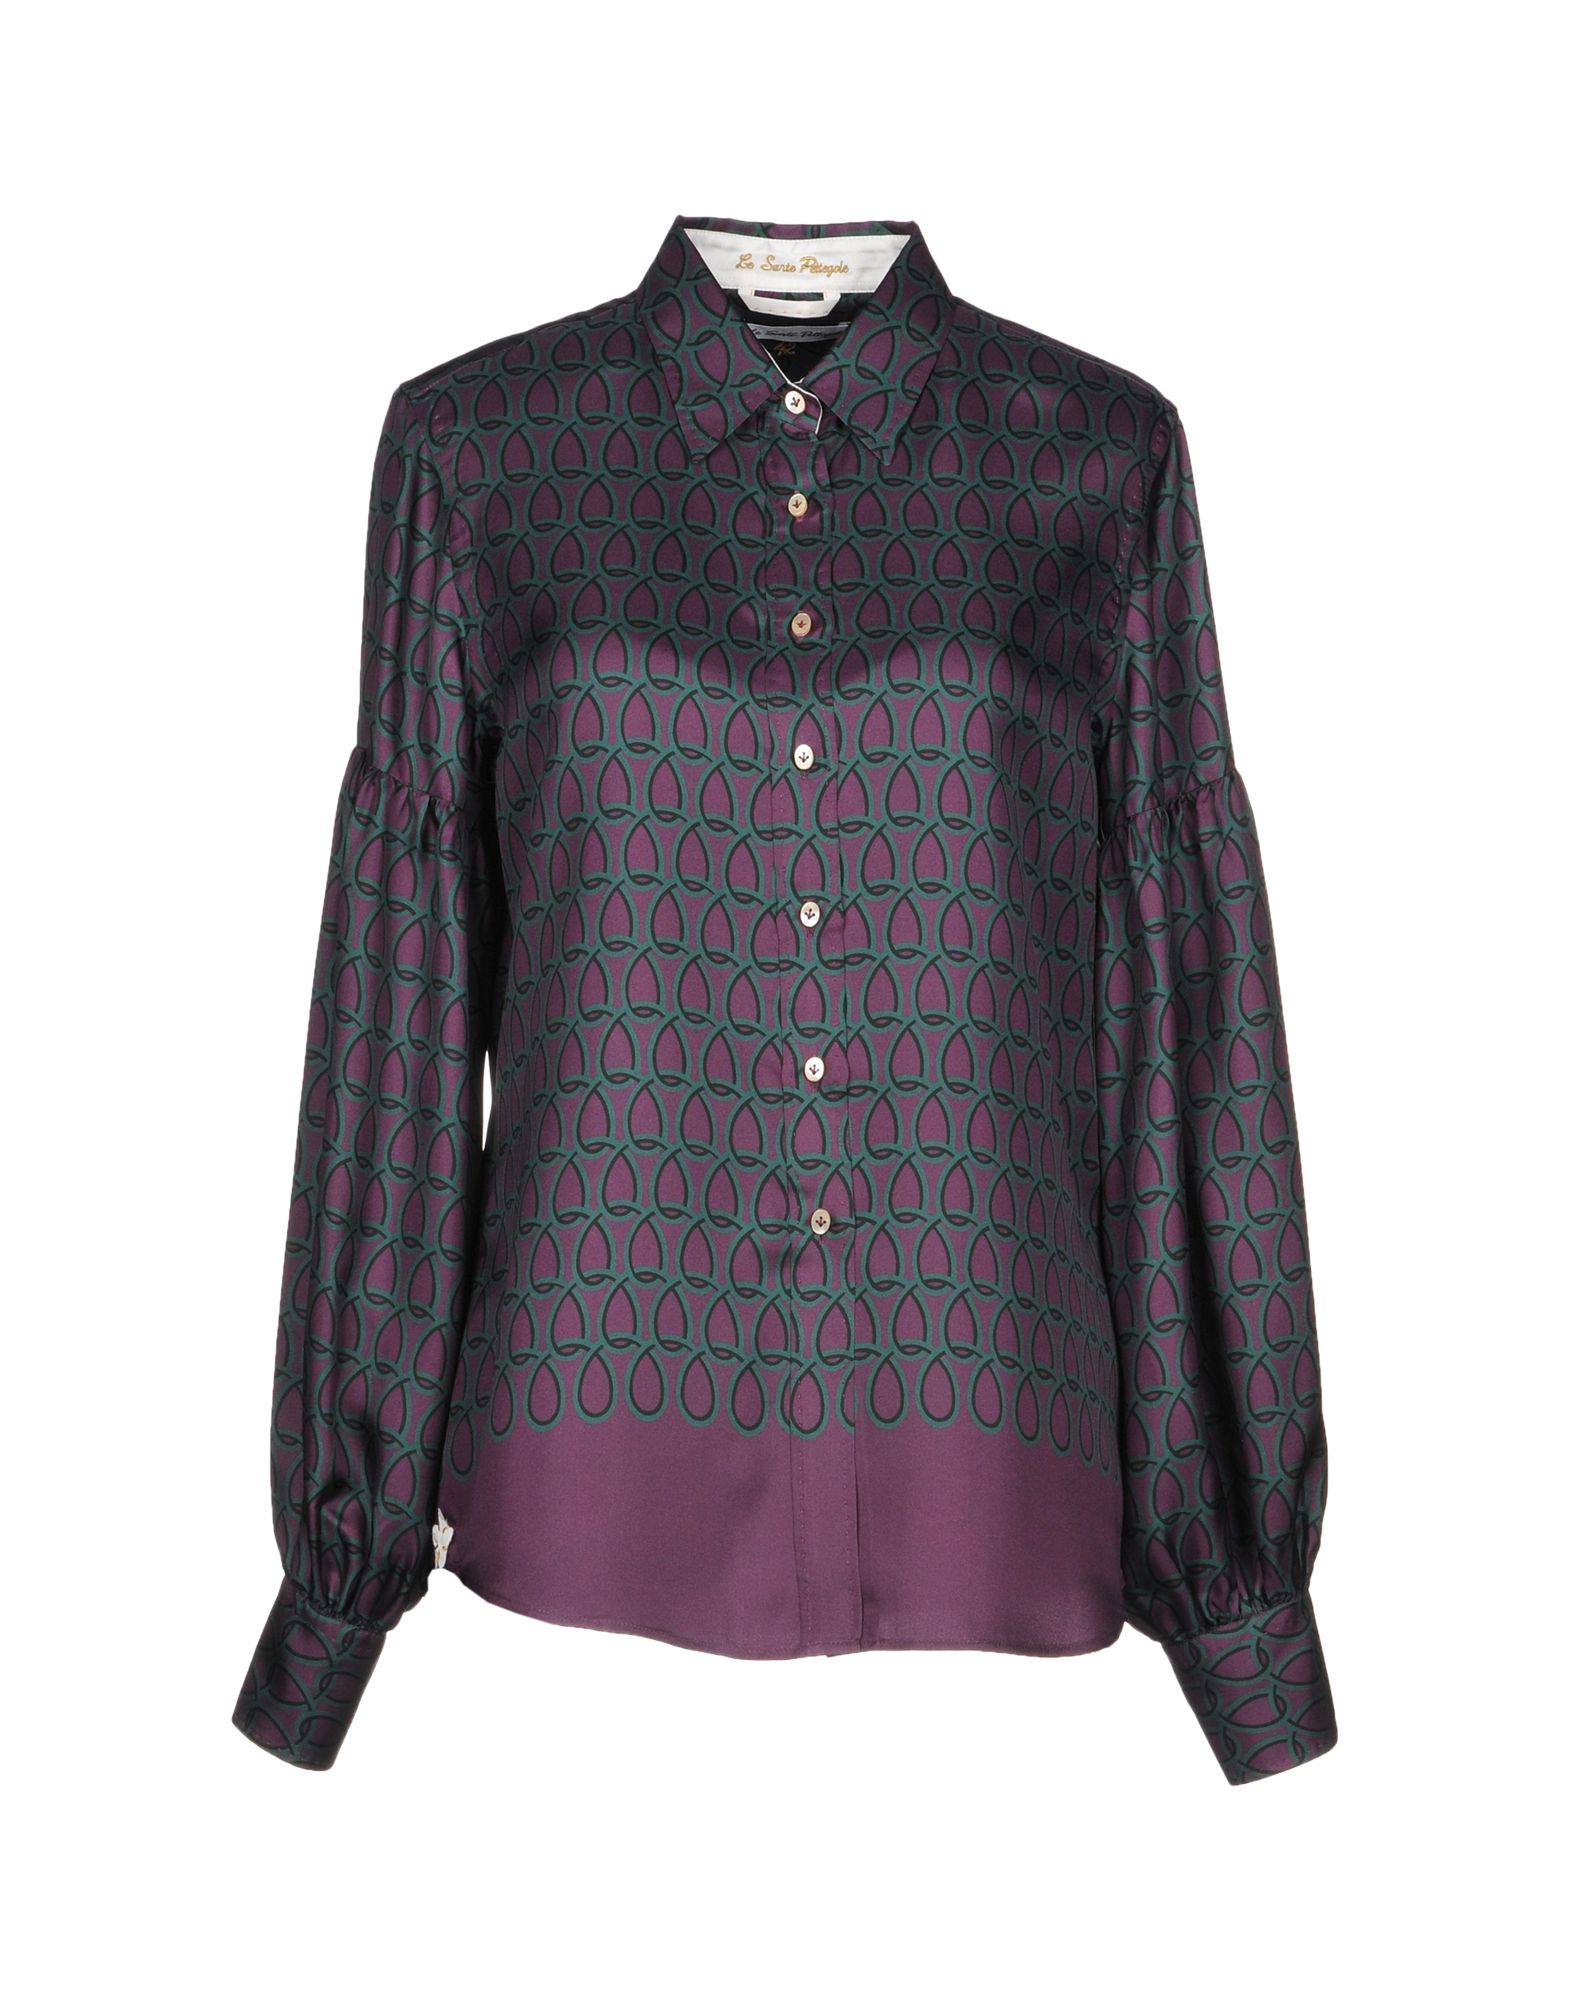 LE SARTE PETTEGOLE Patterned shirts & blouses,38743175EM 3